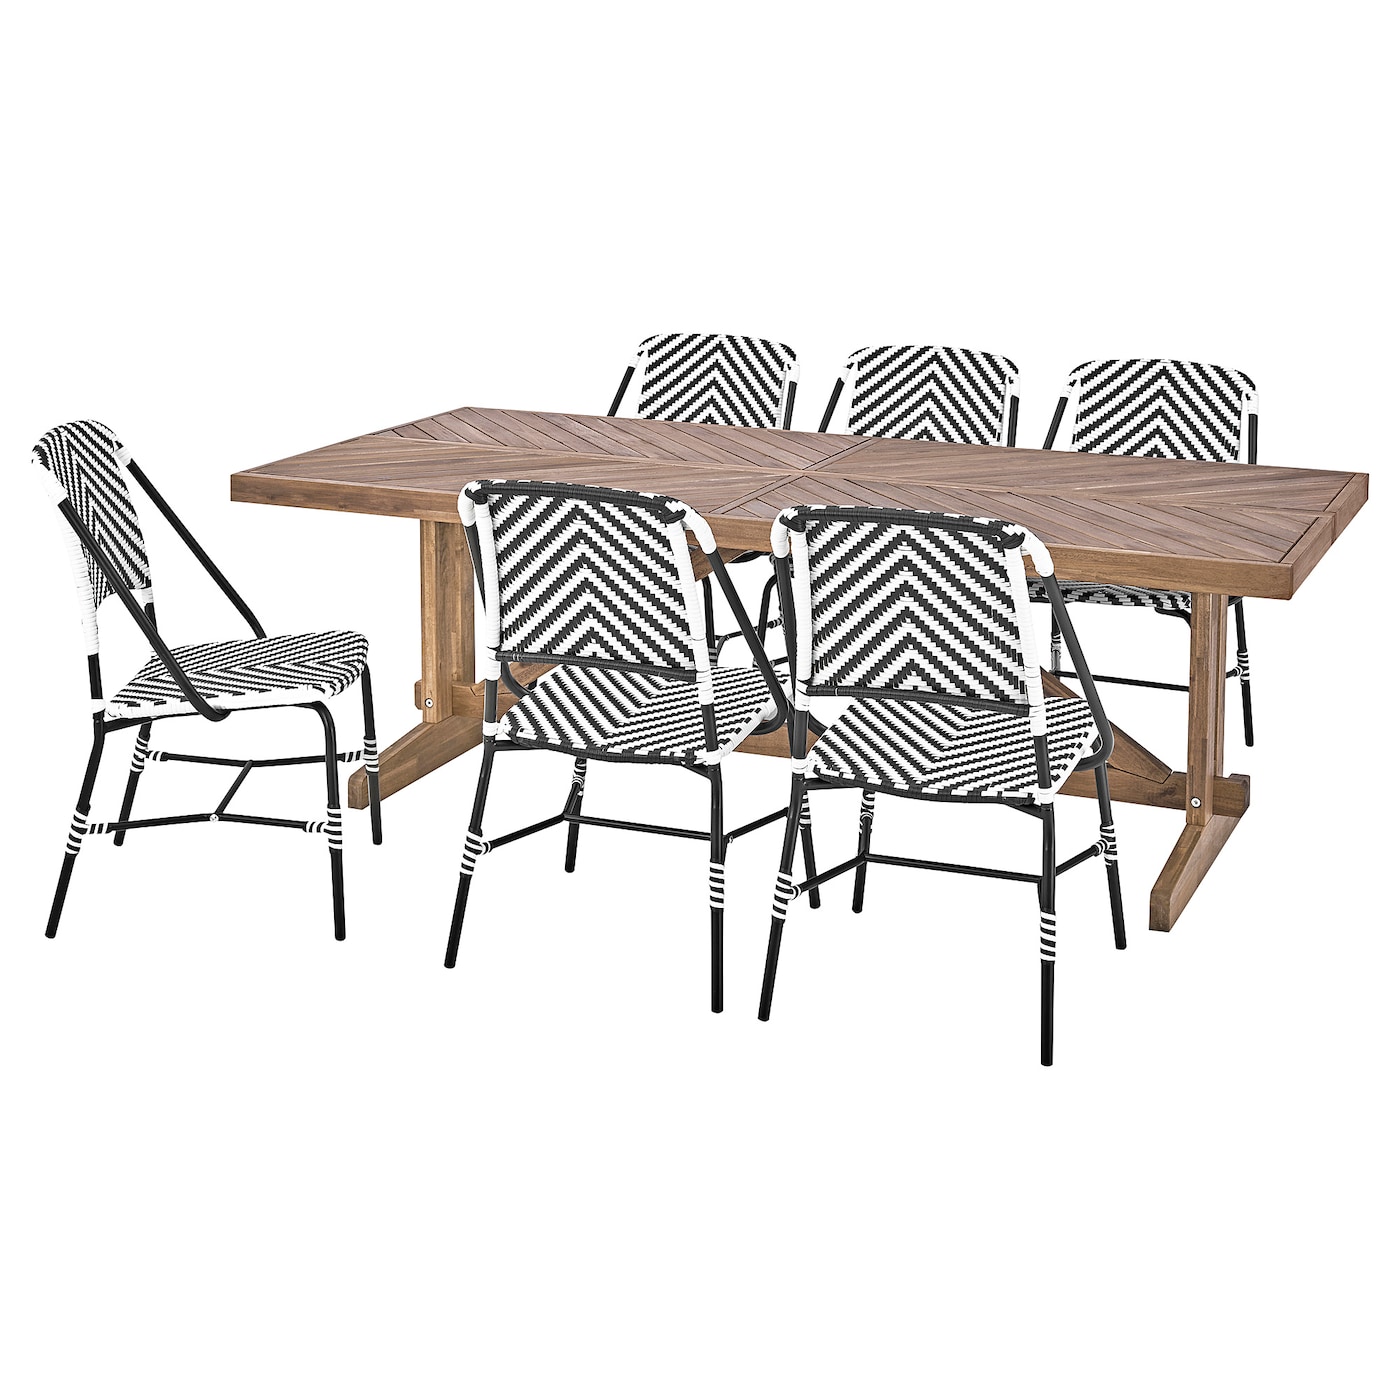 Стол+6 стульев садовый - NORRMANSÖ / VASSHOLMEN IKEA/ НОРРМАНСО /ВАСХОЛМЕН  ИКЕА, 220х100х74 см, черно-белый/коричневый